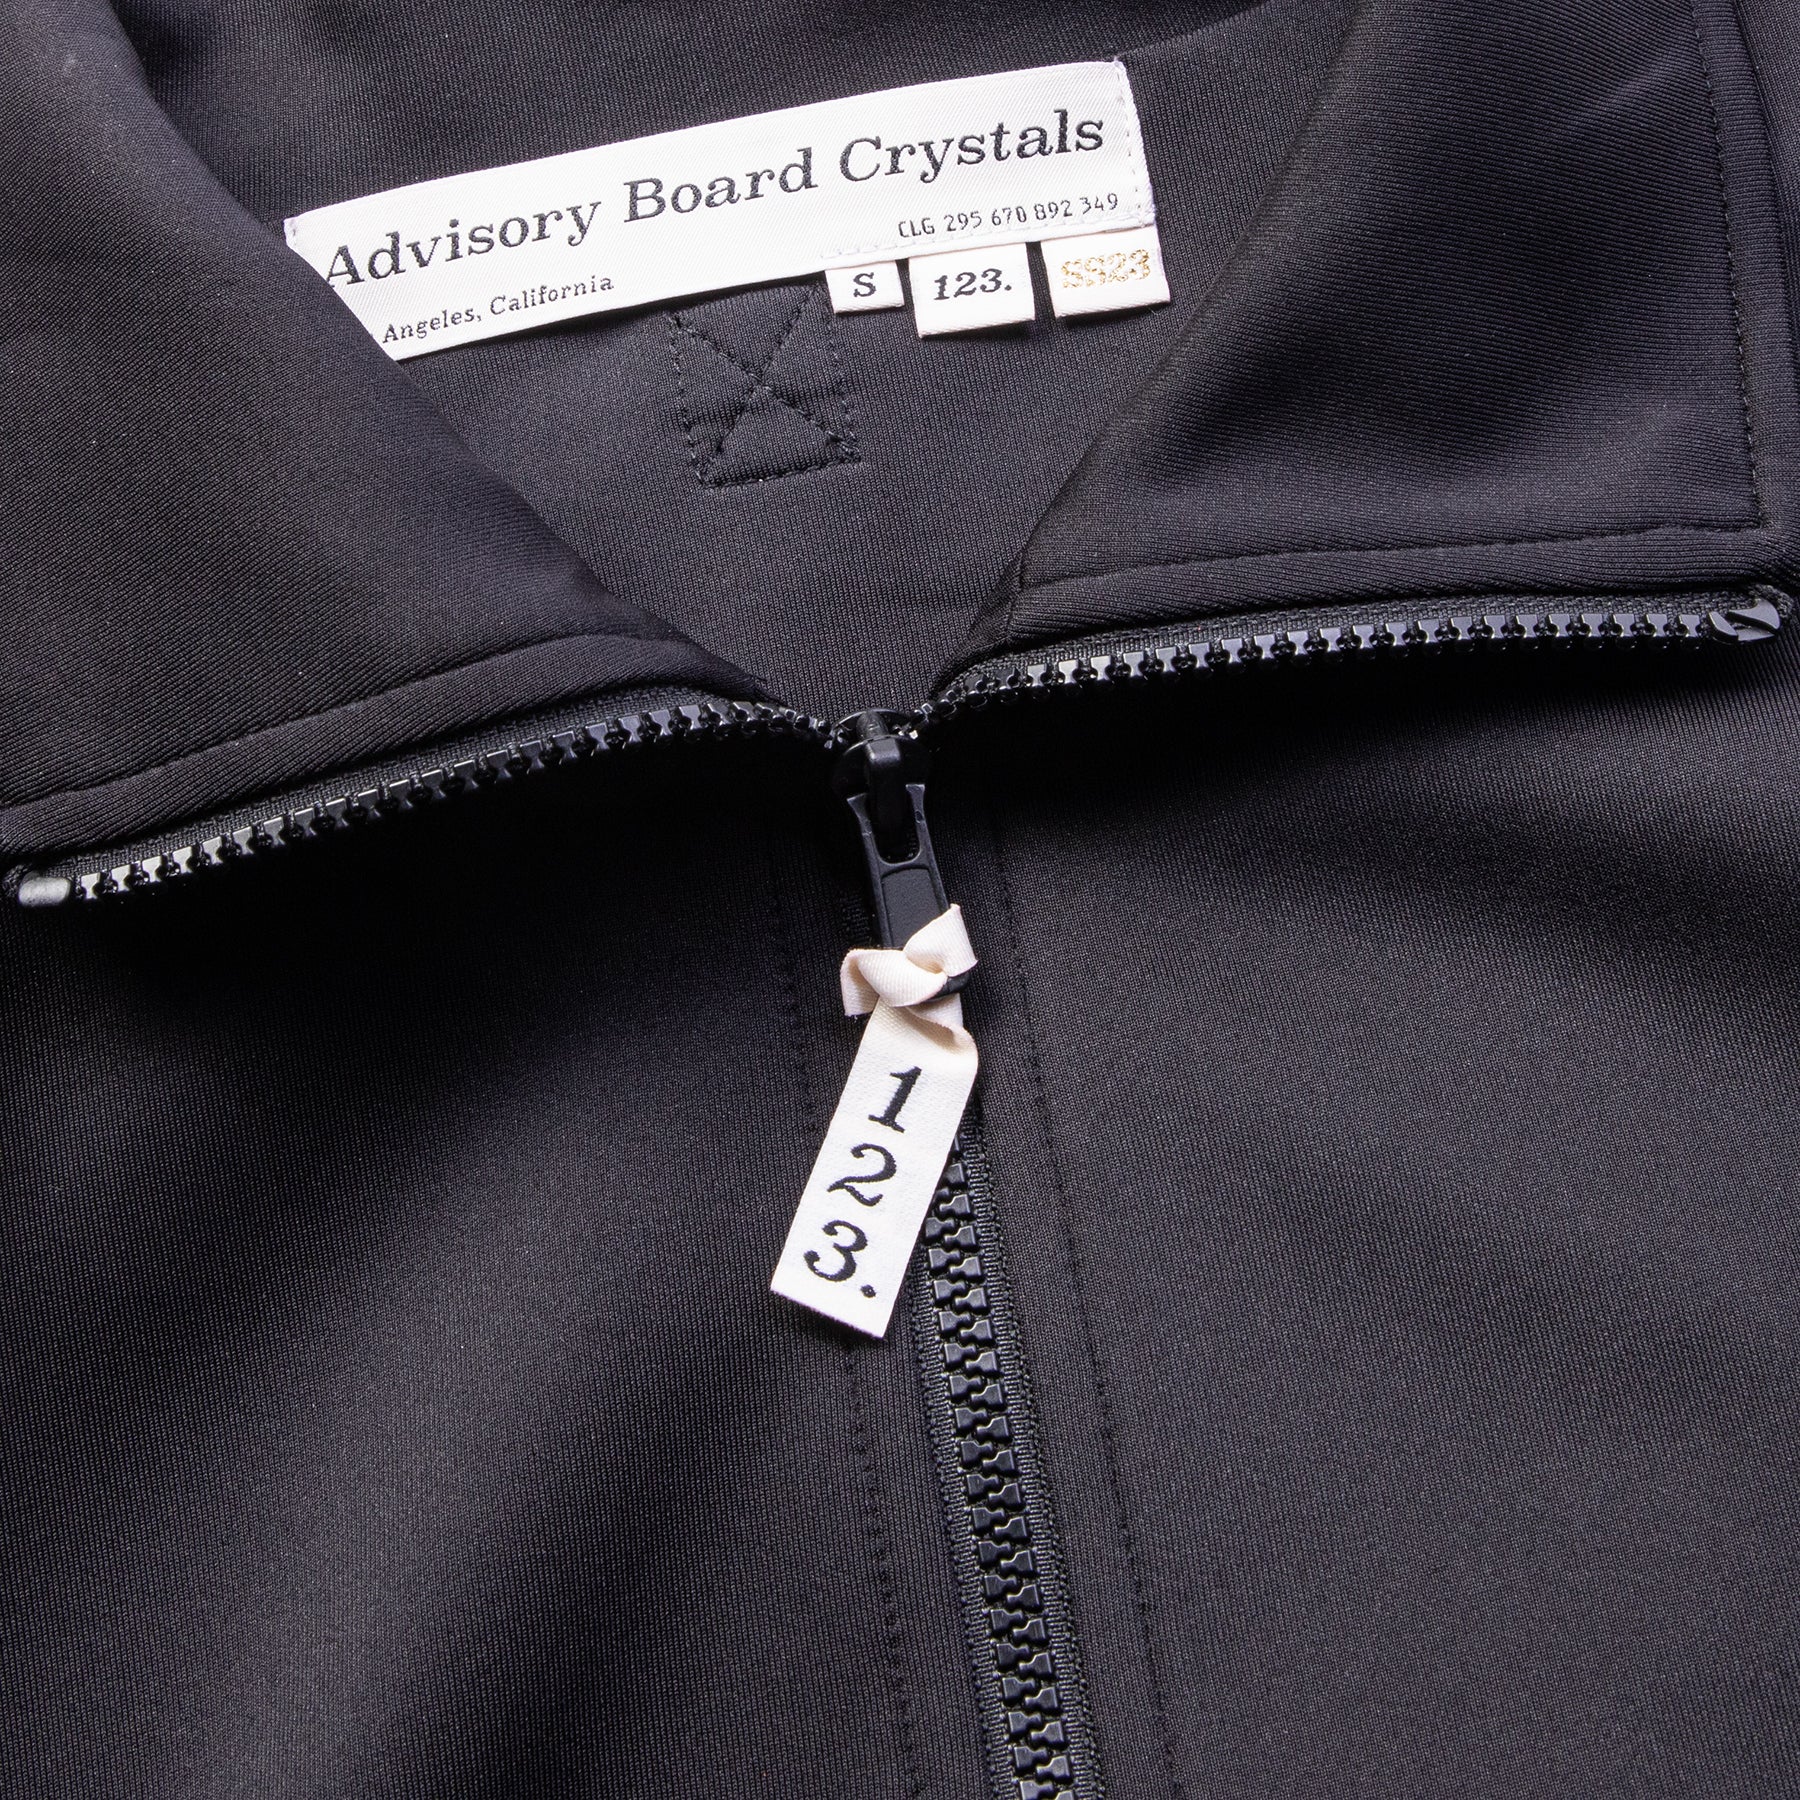 Advisory Board Crystals Abc. 123. Track Jacket